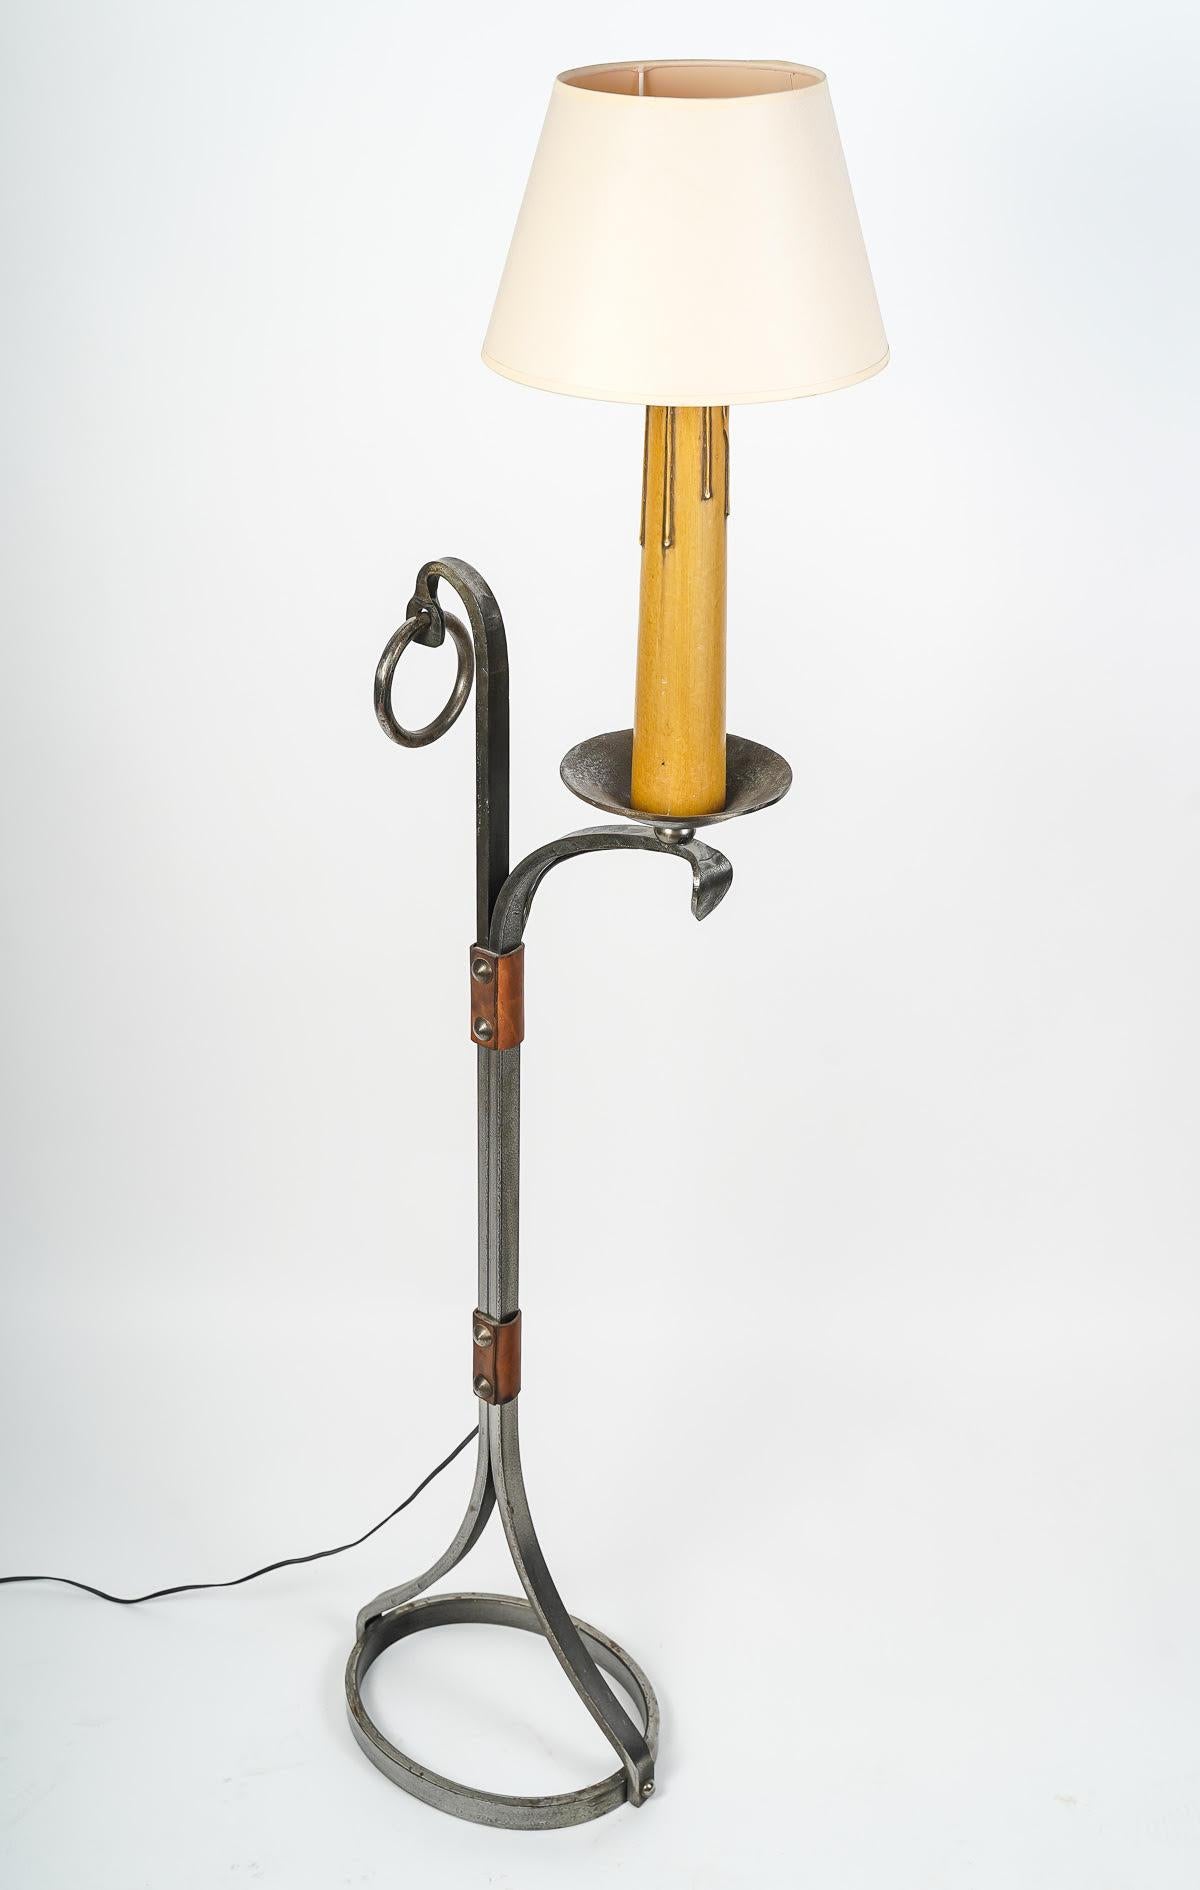 Lampadaire en fer forgé et cuivre des années 1960.

Elegant lampadaire en fer forgé et cuivre des années 1960.

Dimensions : H : 142cm, L : 44cm, P : 24cm : H : 142cm, L : 44cm, P : 24cm